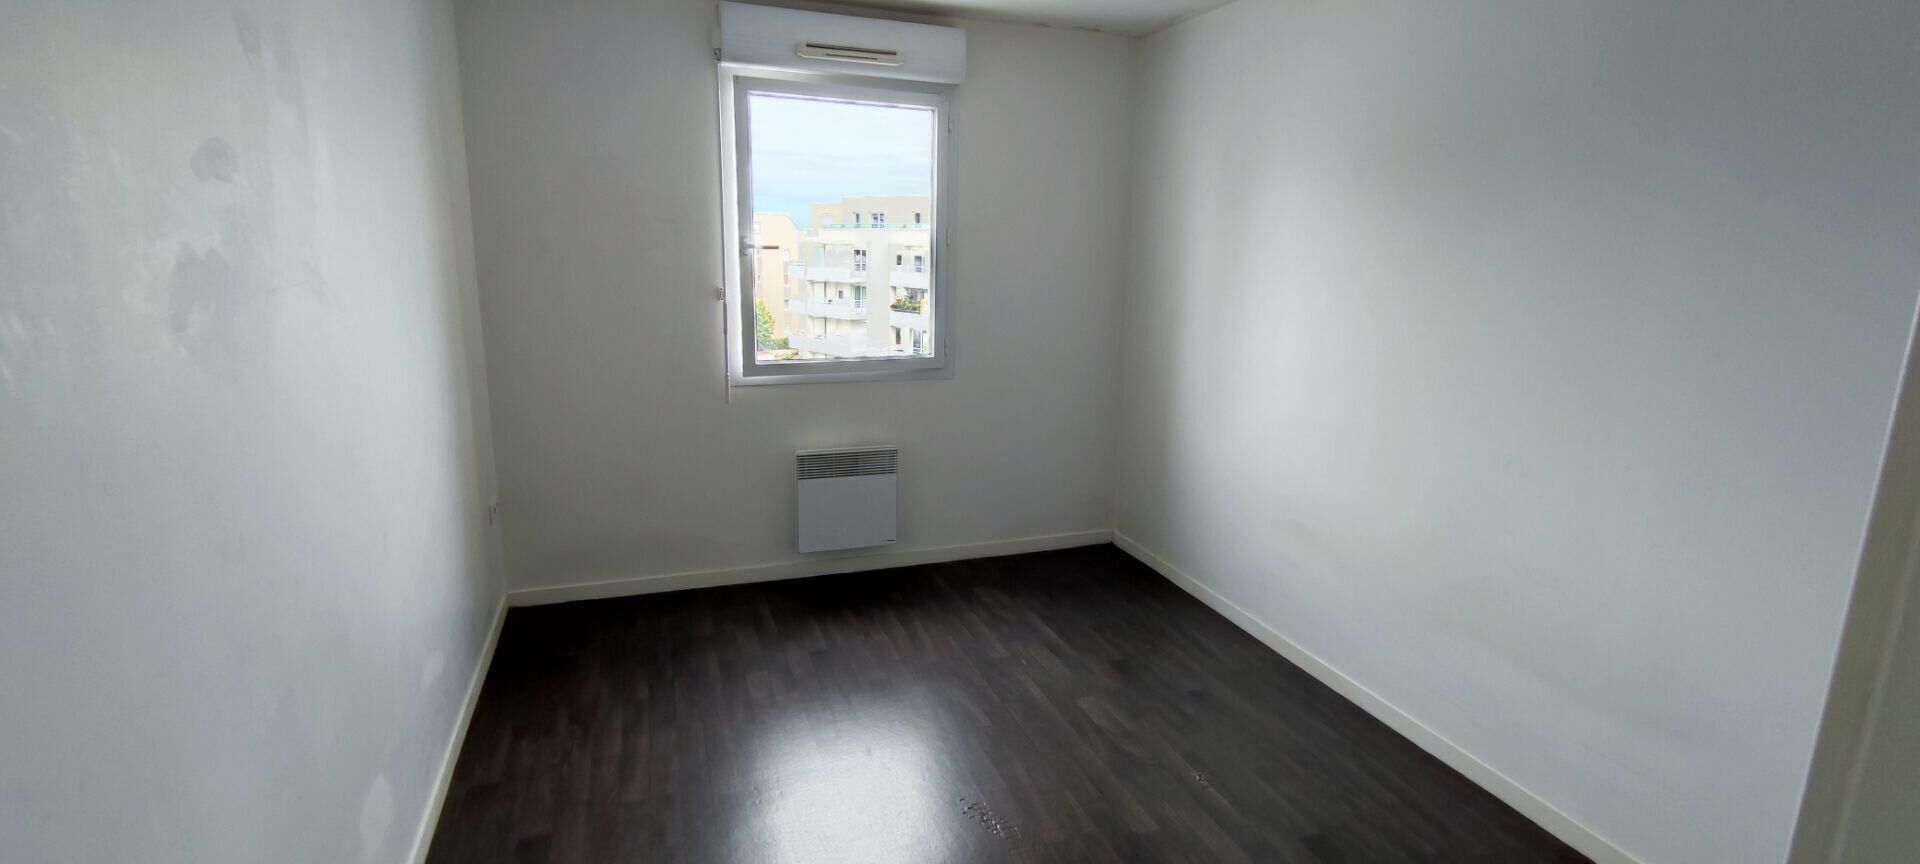 Appartement à vendre 2 38.36m2 à Saint-Brieuc vignette-12